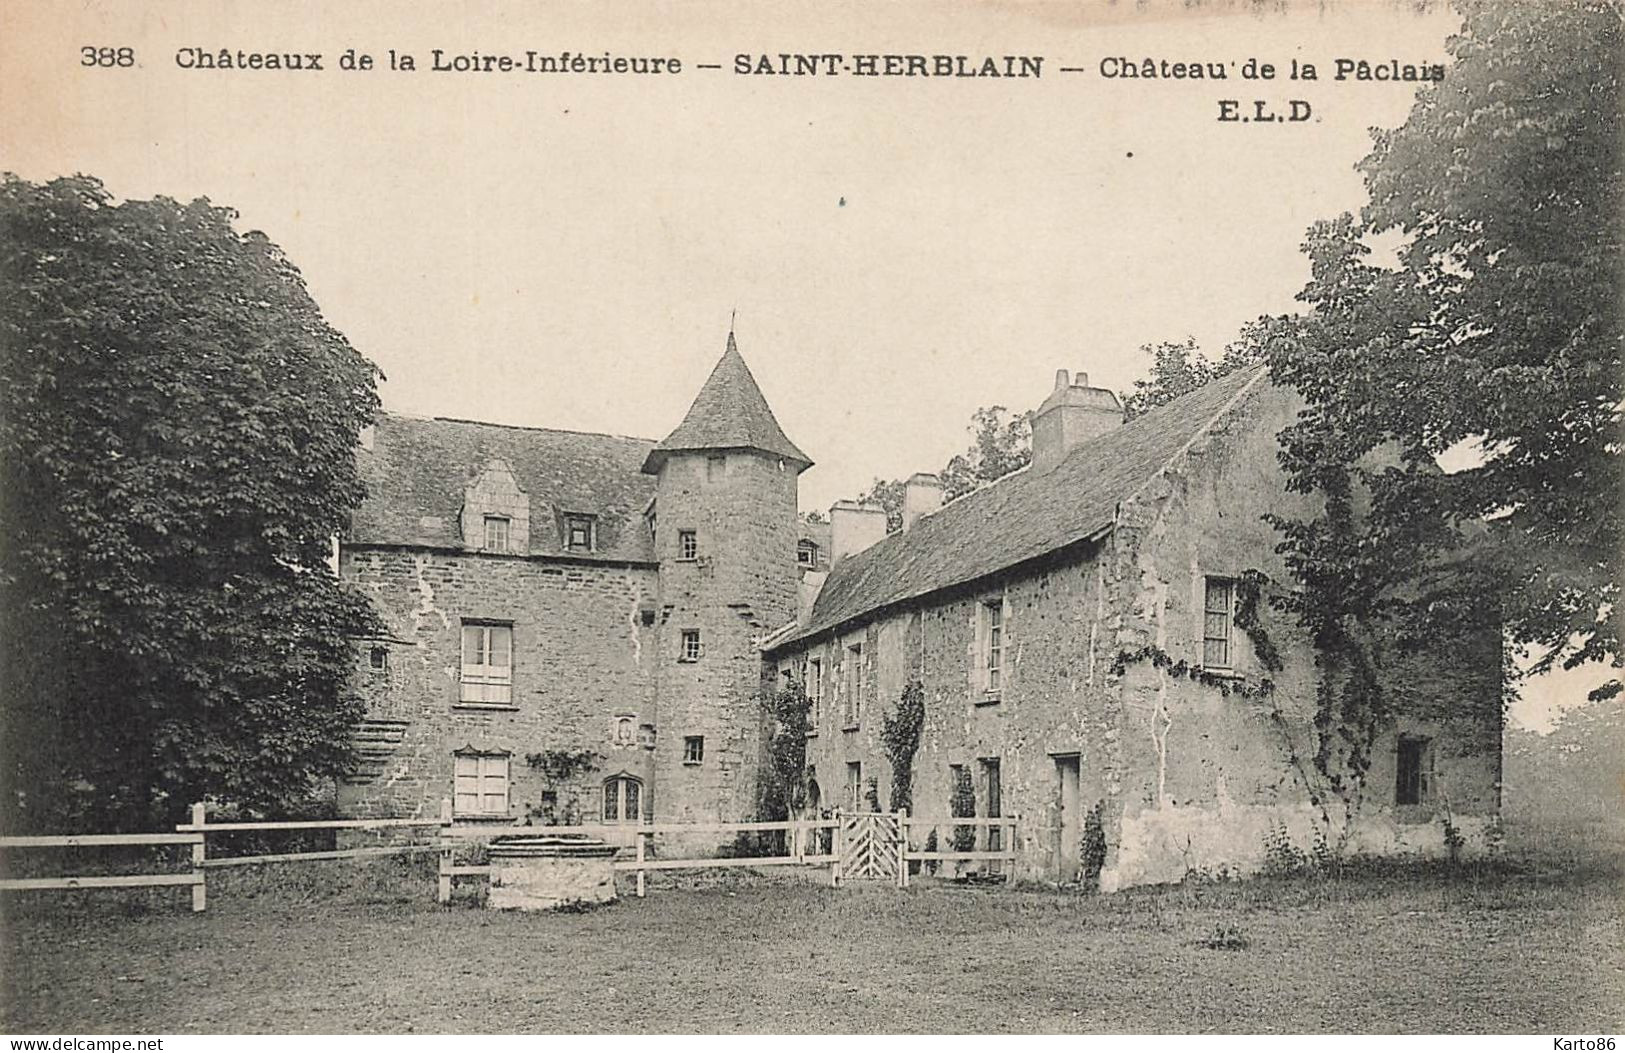 St Herblain * Château De La Paclais * Châteaux De La Loire Inférieure N°388 - Saint Herblain